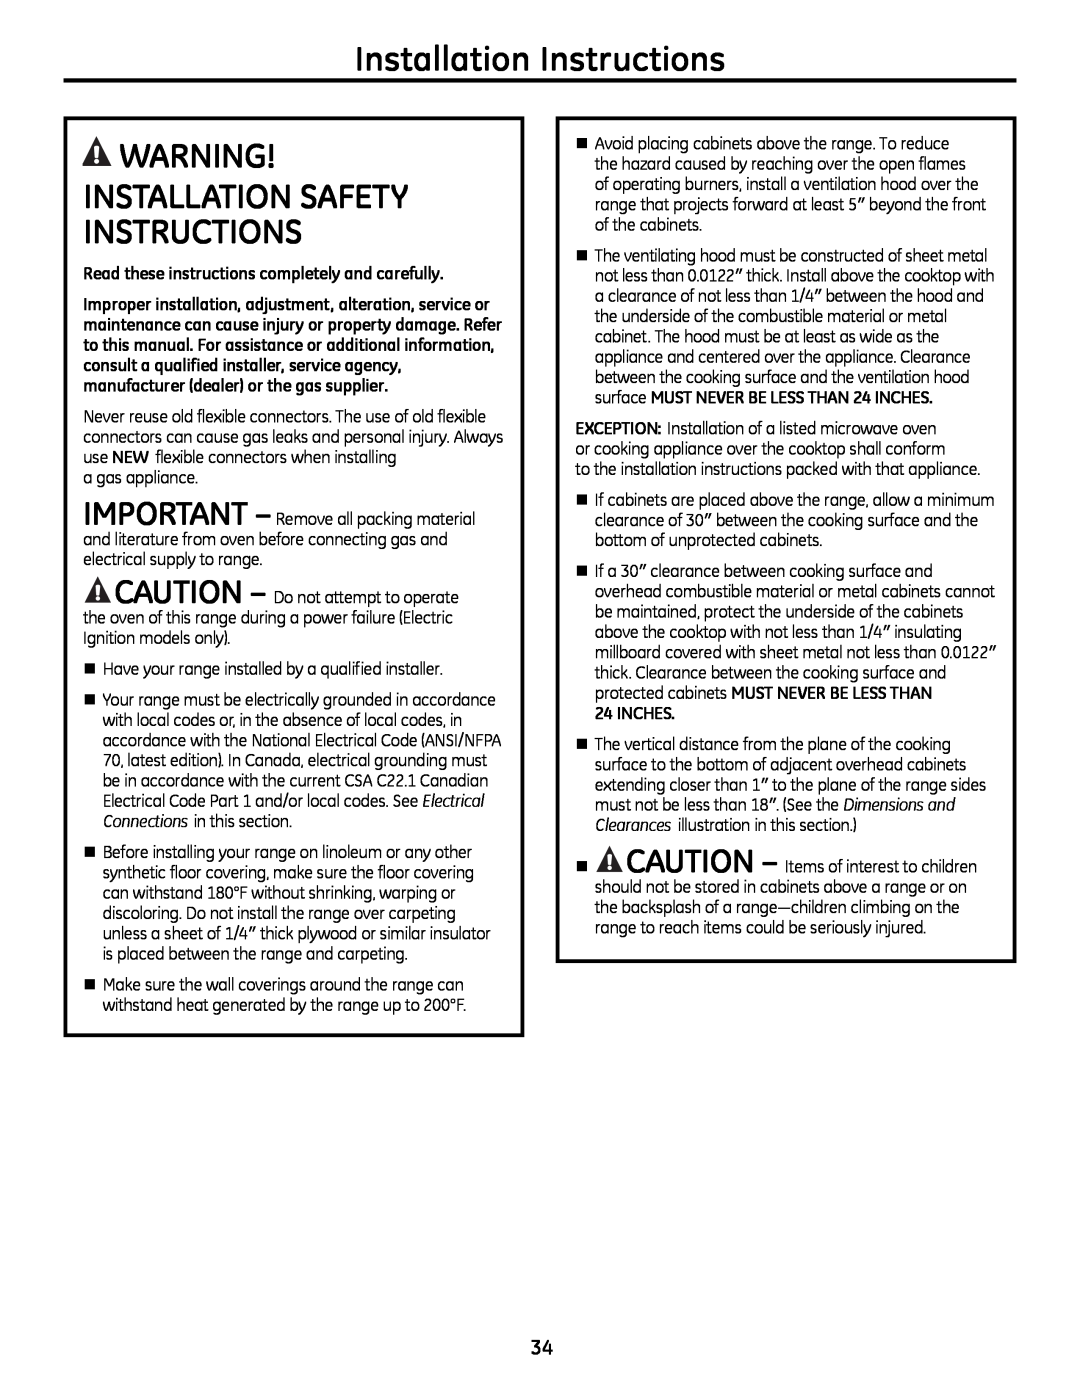 GE JgB290, JgB280 manual Installation Instructions, wARNING! INSTALLATIoN SAFETy INSTRUCTIoNS 